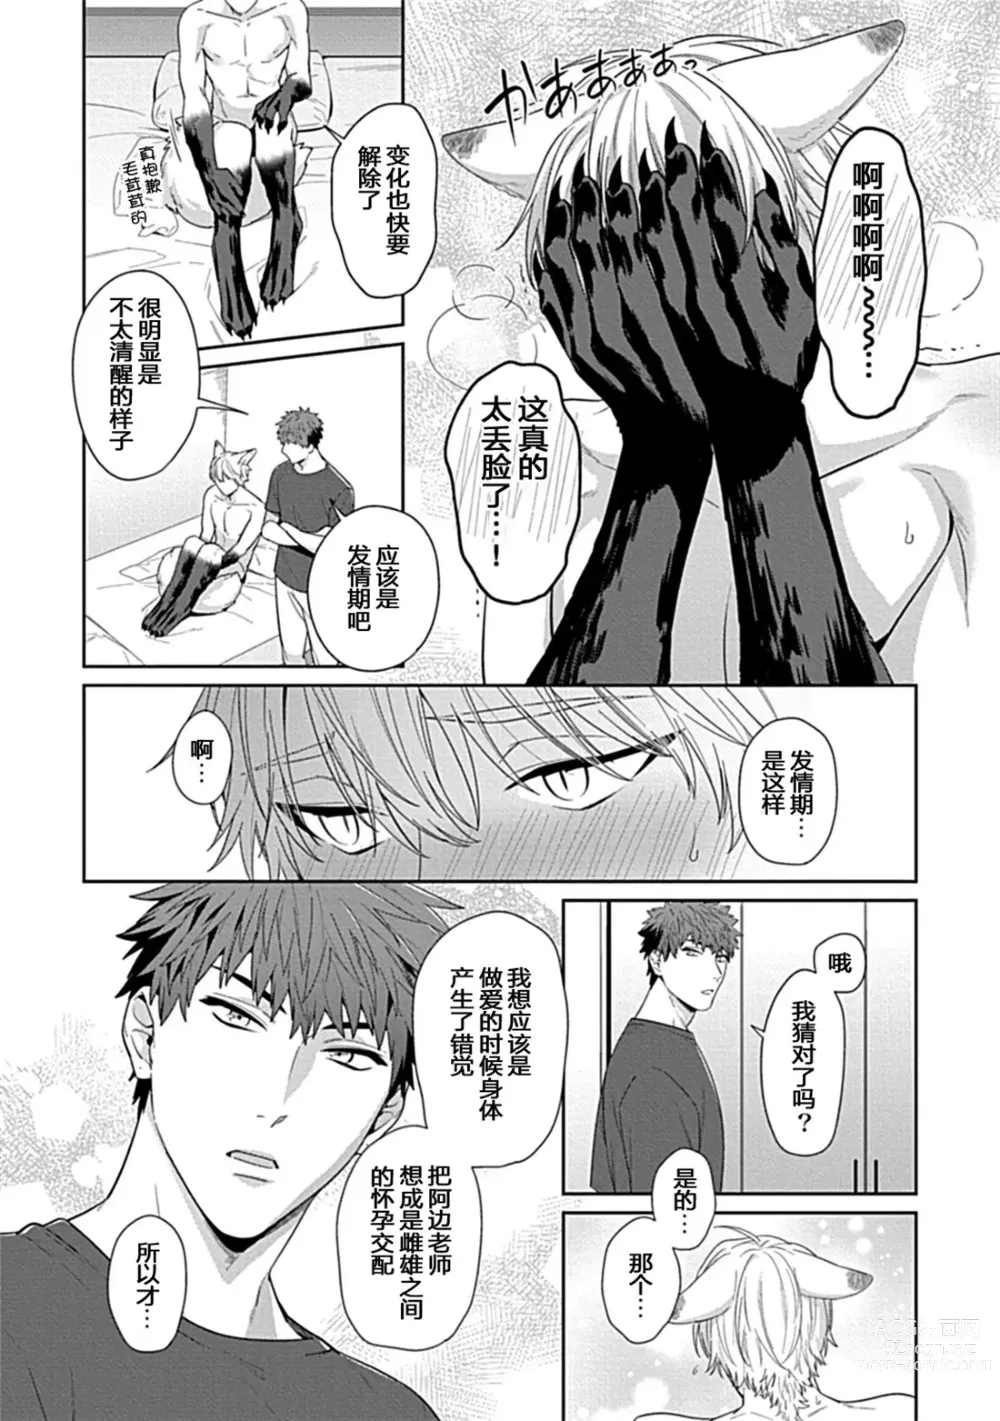 Page 33 of manga Sensei, Shokuji wa Bed no Ue de 3